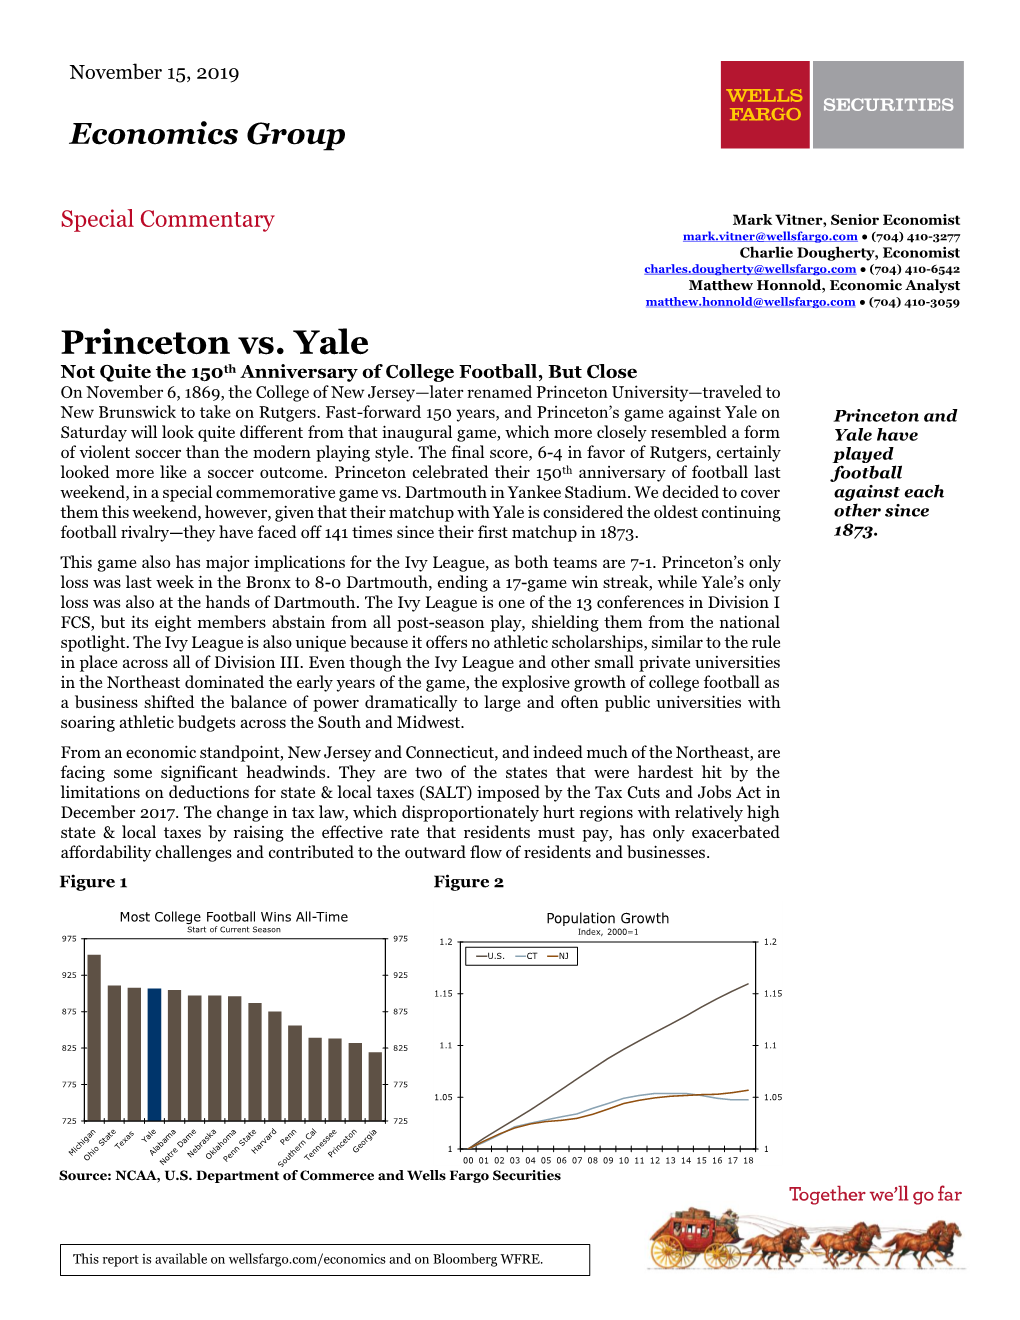 Princeton Vs. Yale